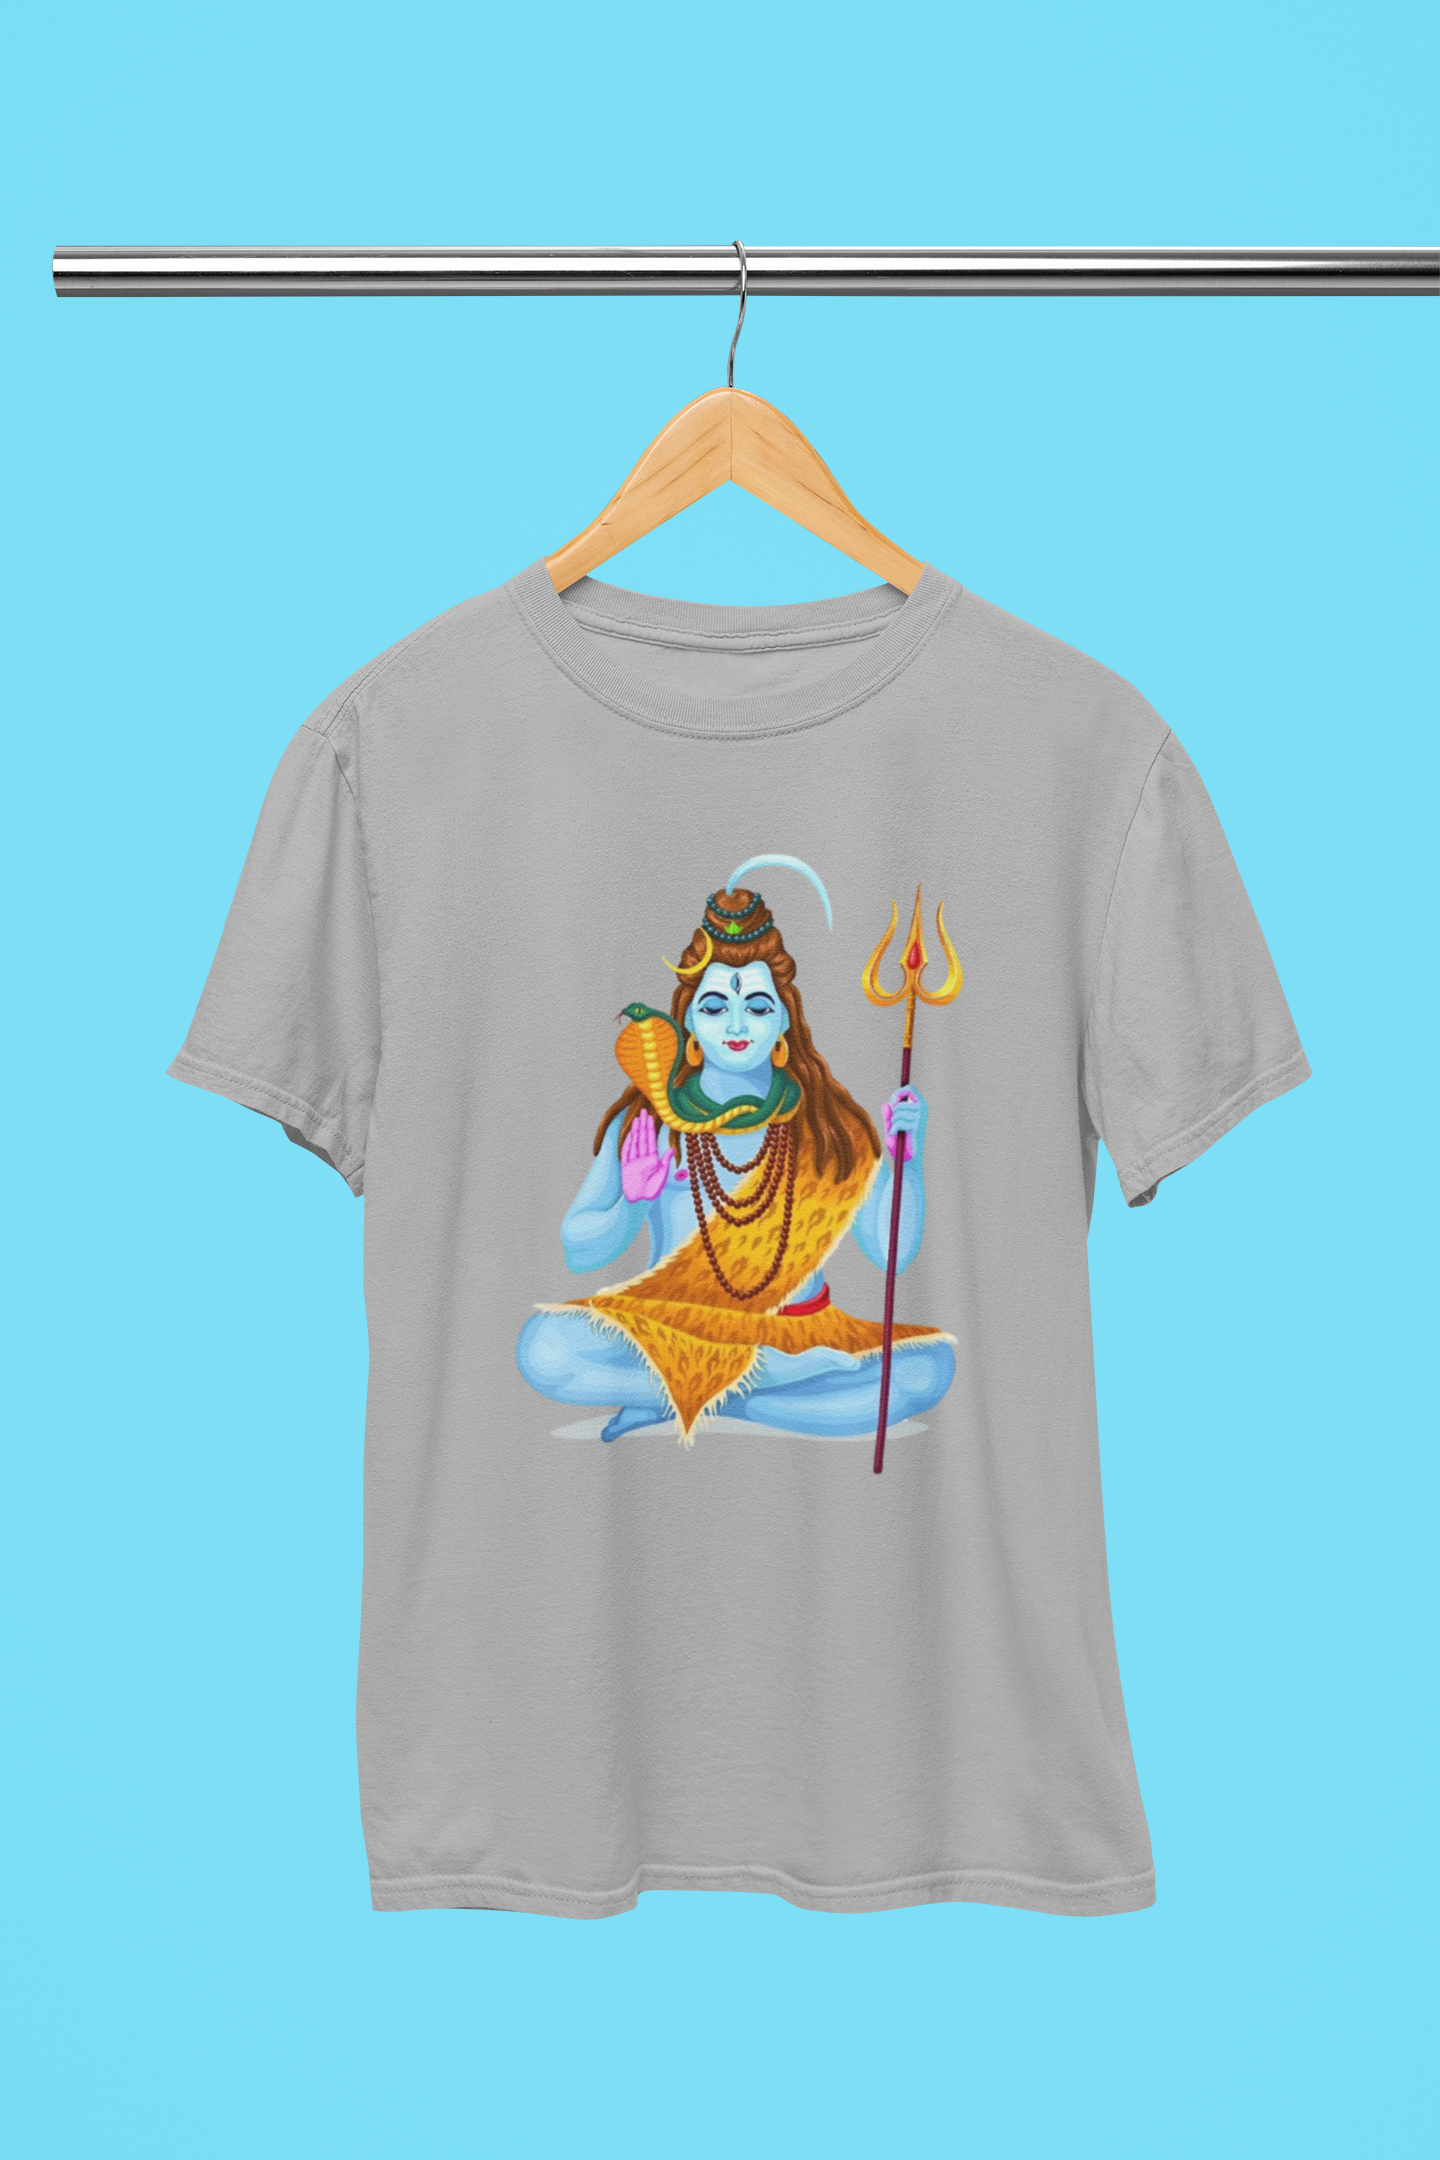 Mahadev Shiva Shivaratri T-Shirt